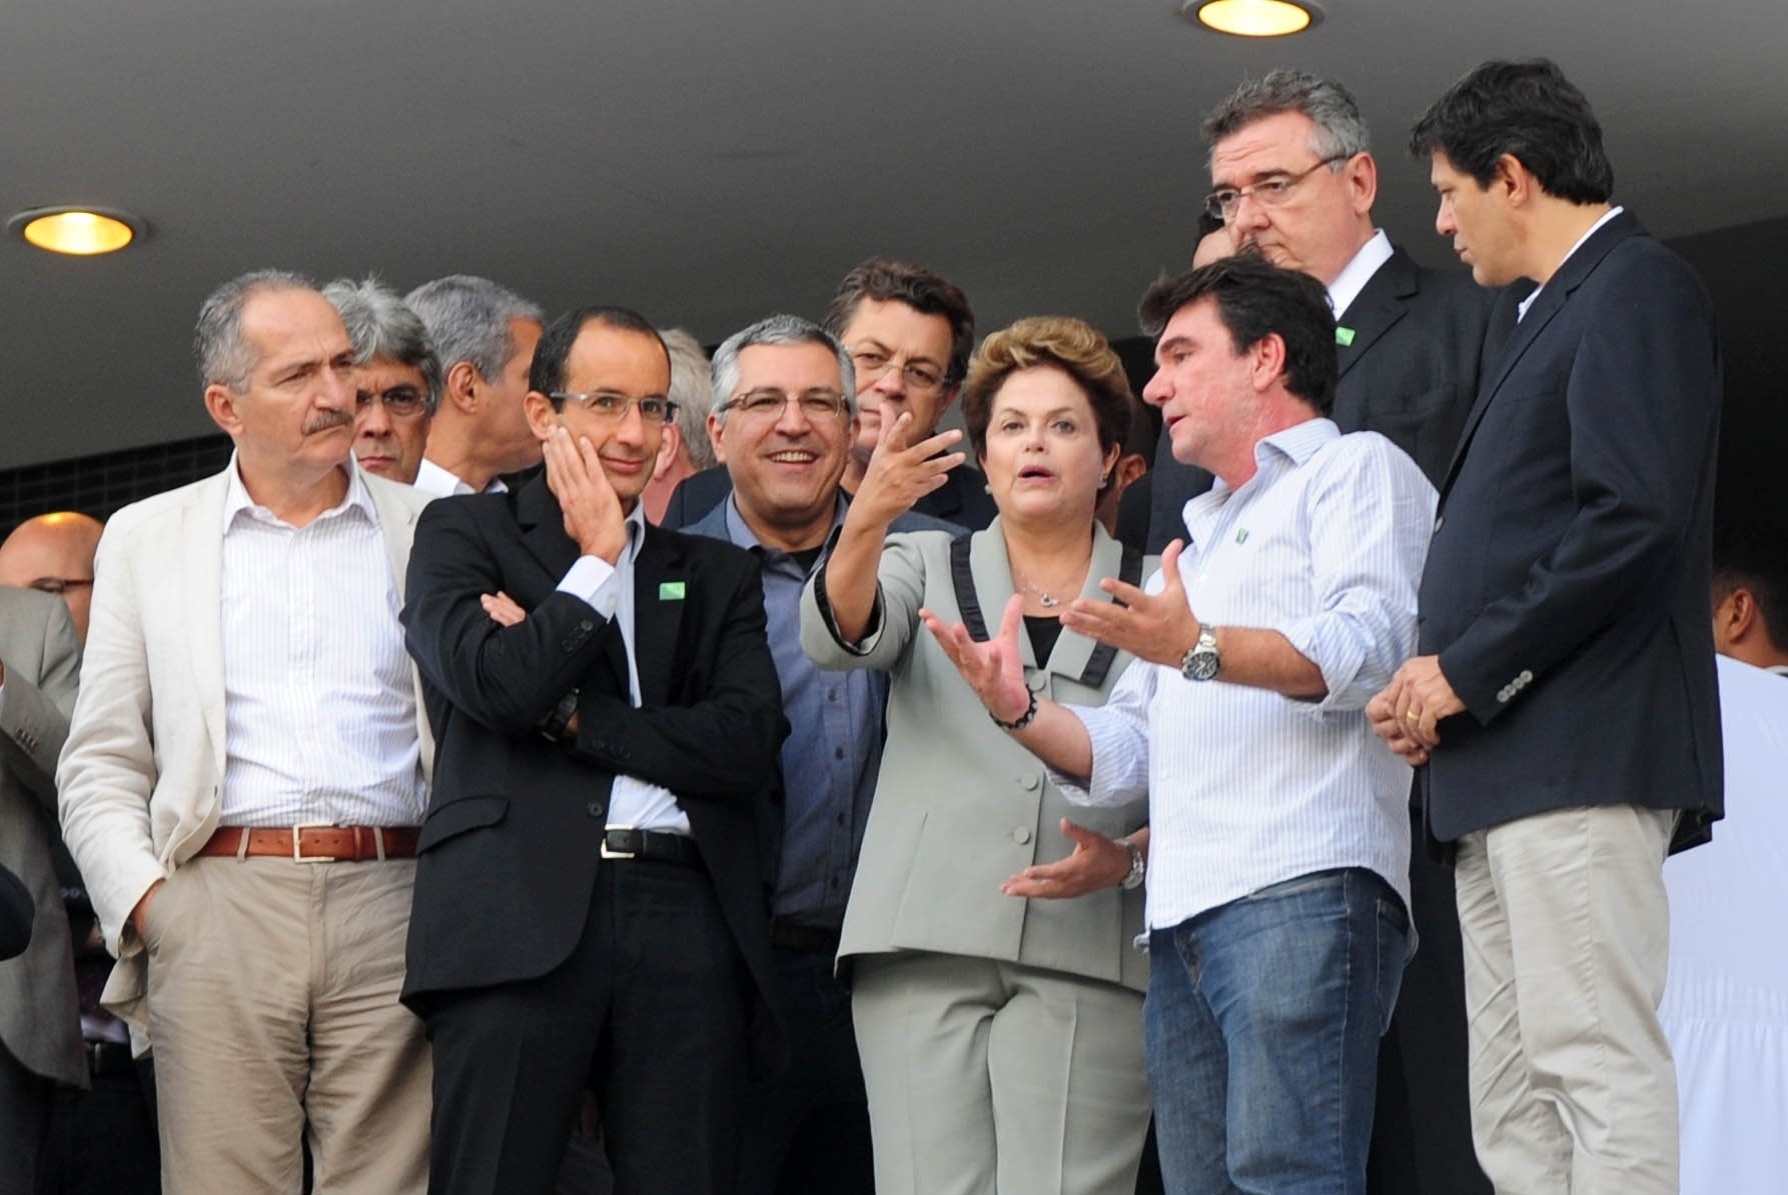 08.05.14 - Presidente Dilma Rousseff visita tribunas do Itaquerão ao lado de Aldo Rebelo, Alexandre Padilha, Fernando Haddad, Andrés Sanchez e Mário Gobbi